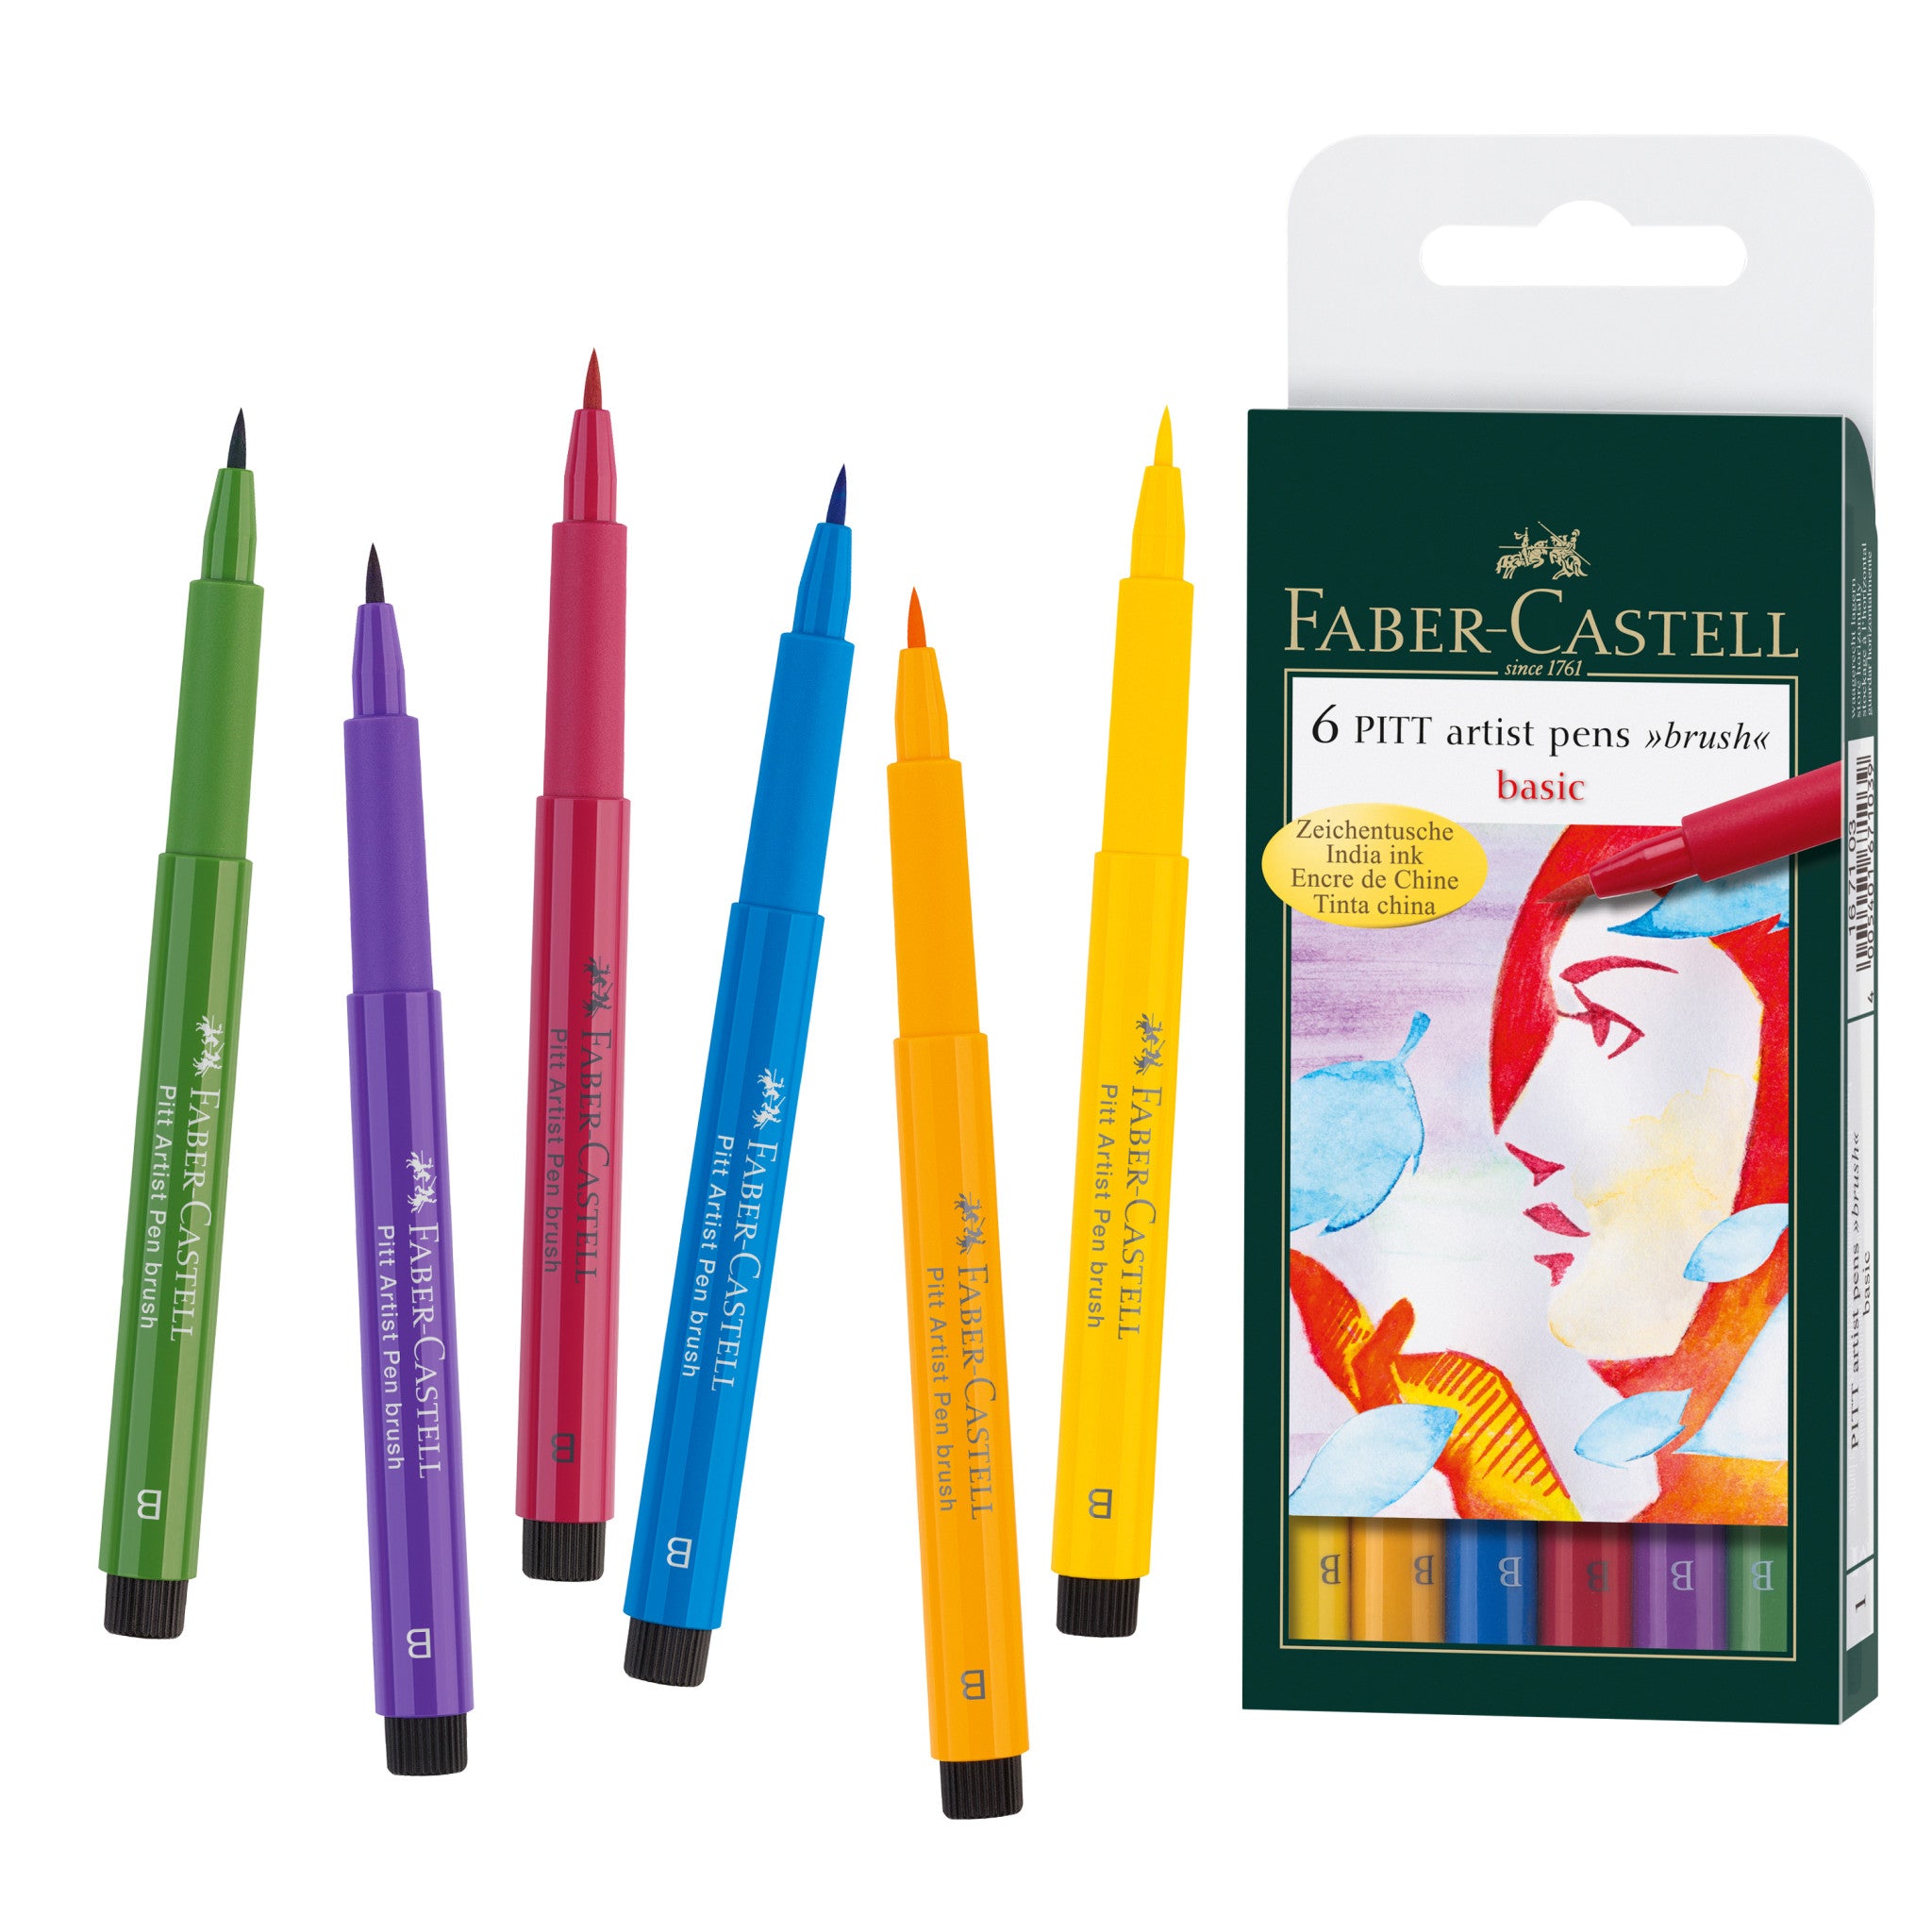 Faber-Castell Pitt Artist Pen Brush Wallet of 6 Springtime